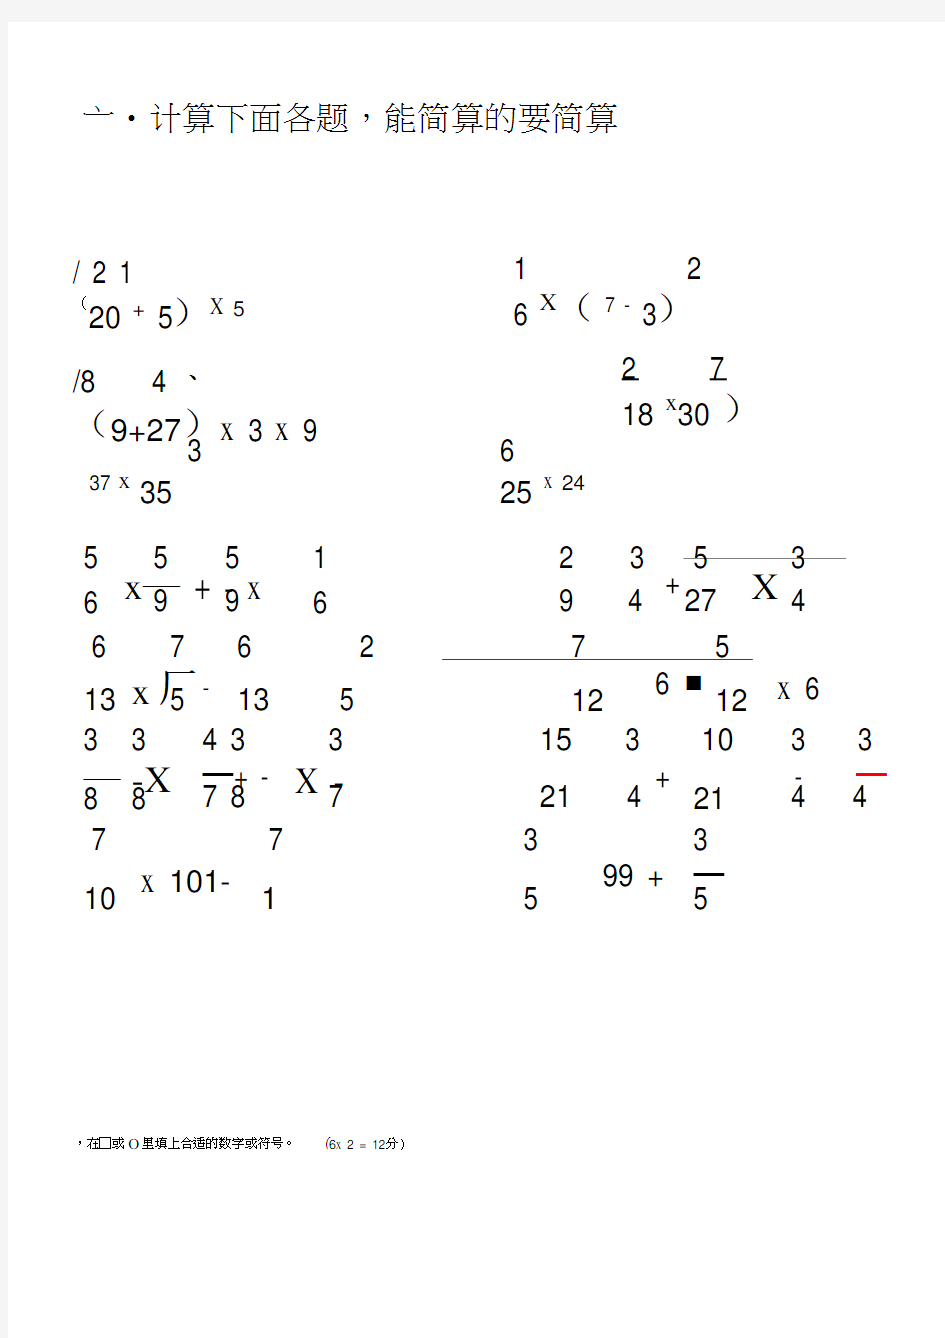 分数乘法的混合运算和简便运算练习7(20200531232936)